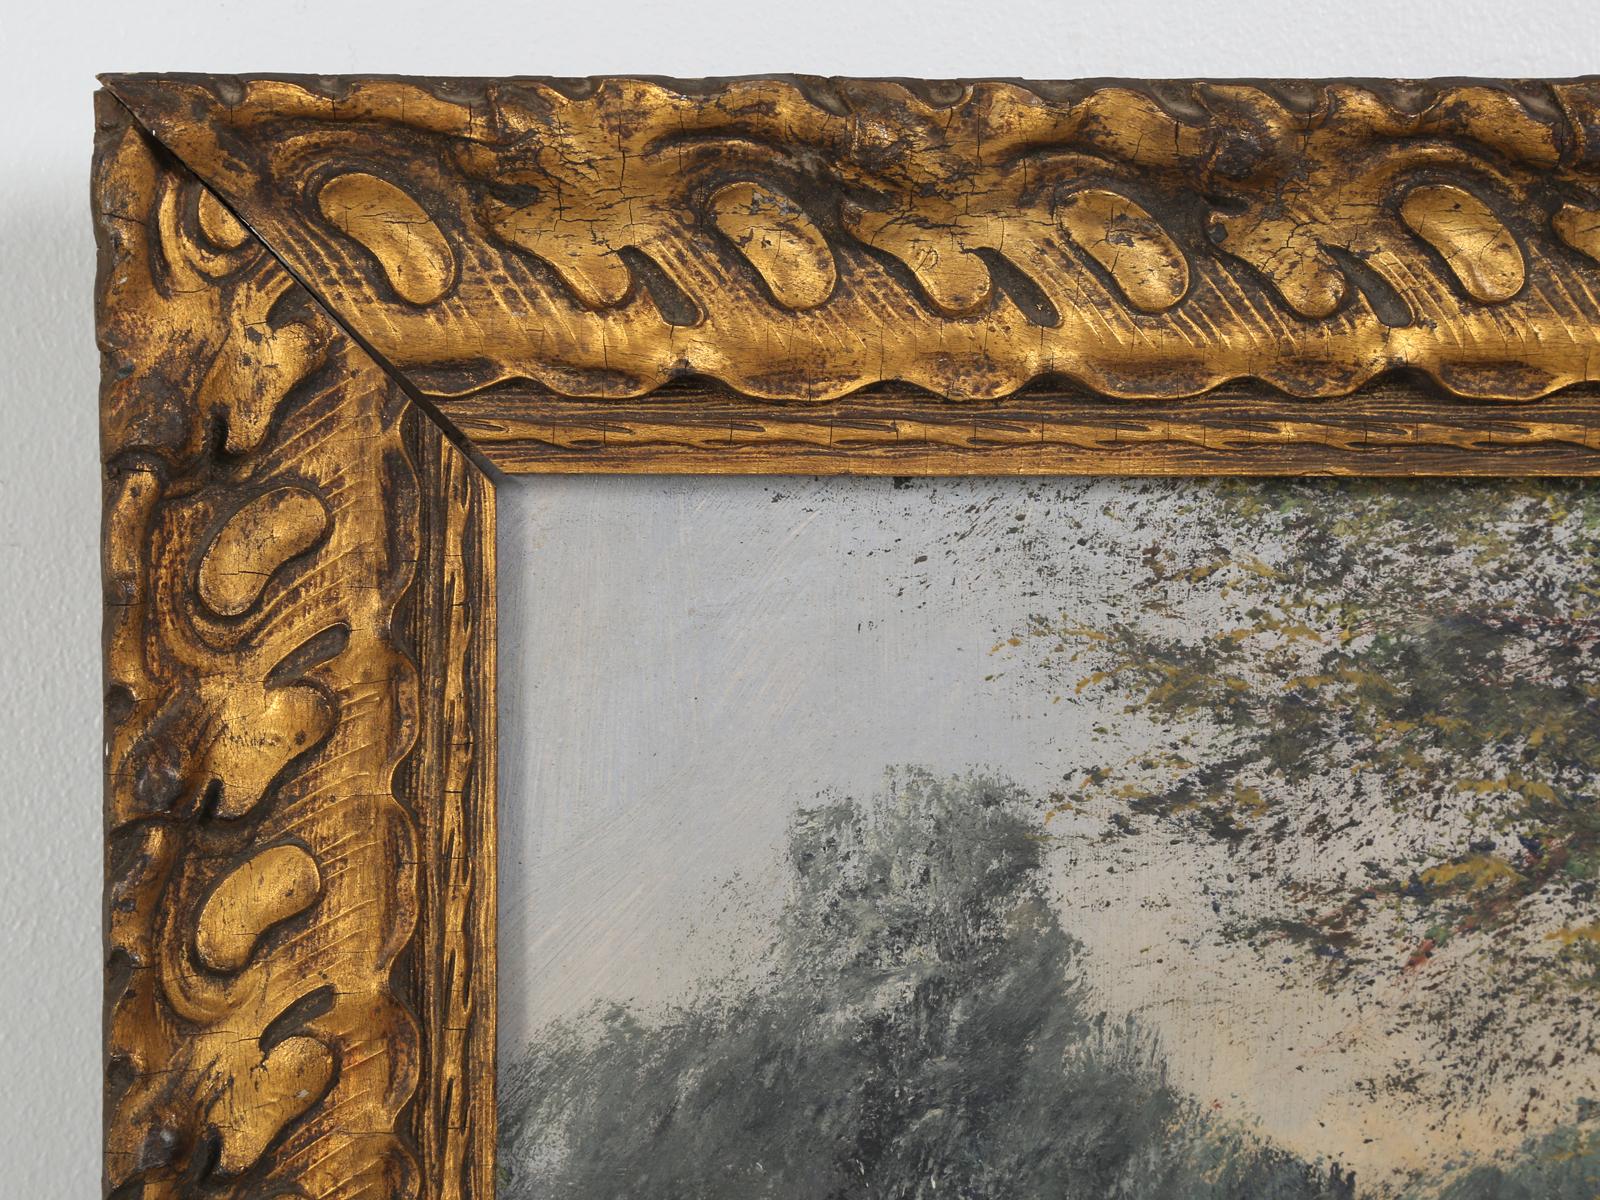 Ancienne peinture à l'huile de paysage français, sur lin, signée Baldy, dans ce qui semble être son cadre doré d'origine. Probablement peint au début des années 1900, représentant une personne sur une route de campagne isolée. Joli cadre en bois